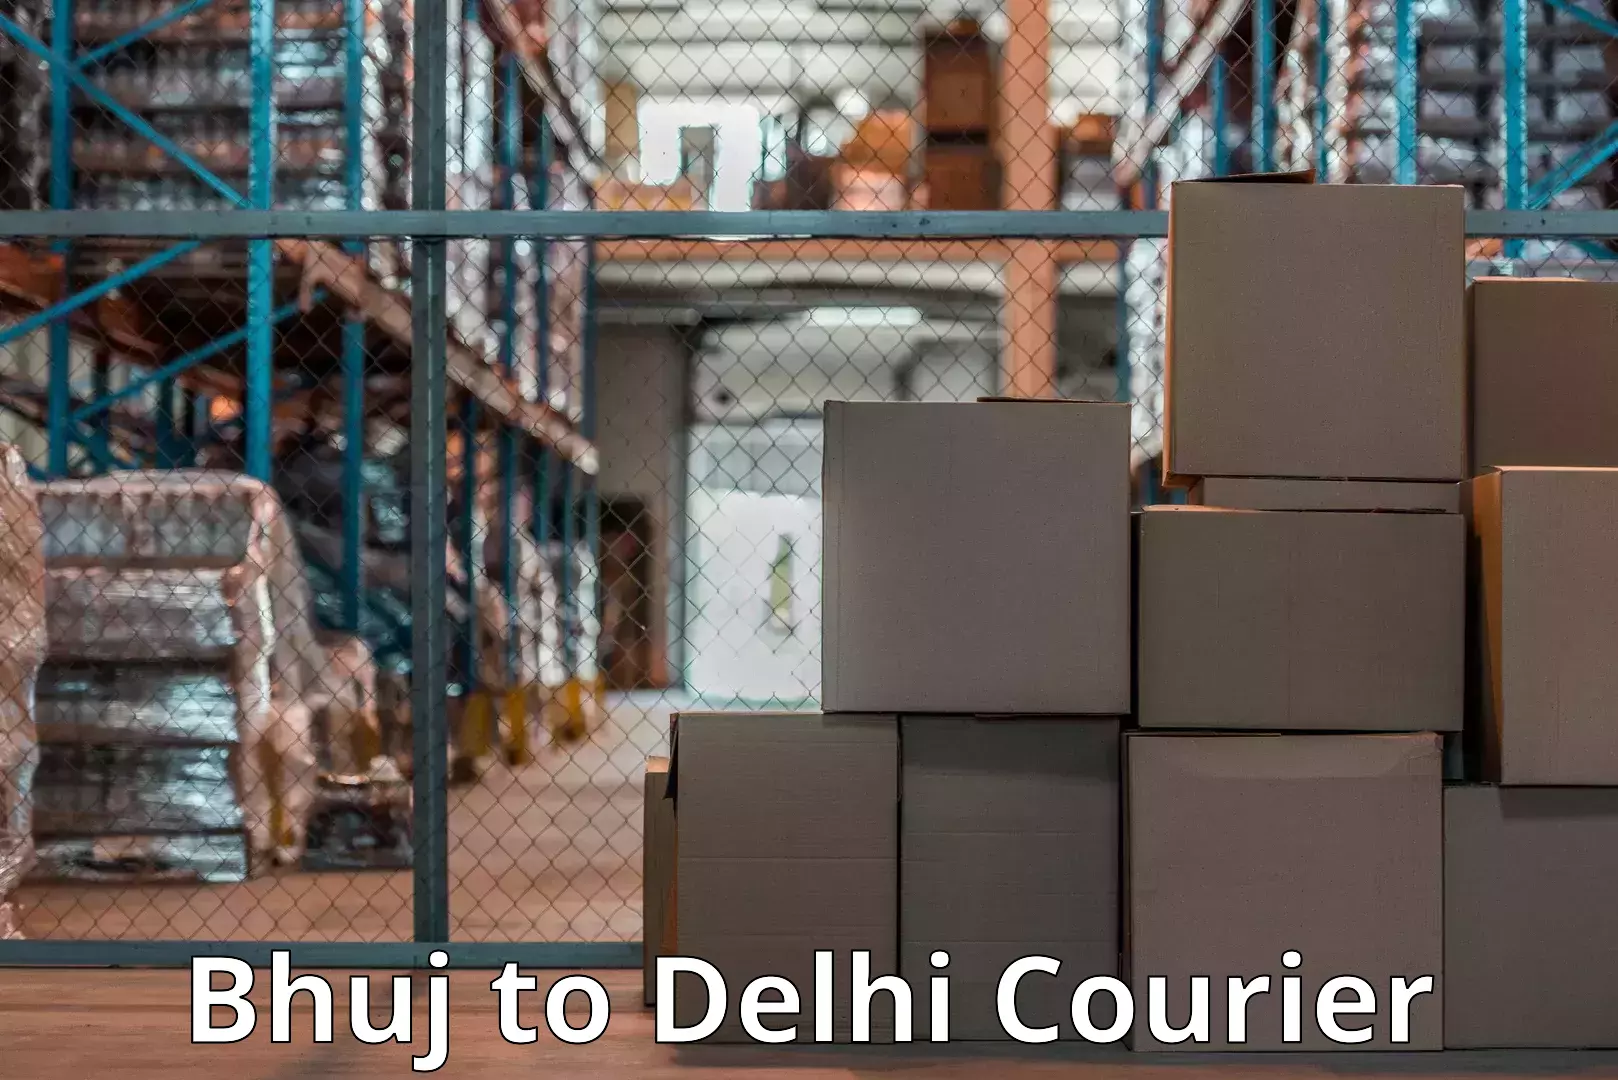 Household logistics services Bhuj to Delhi